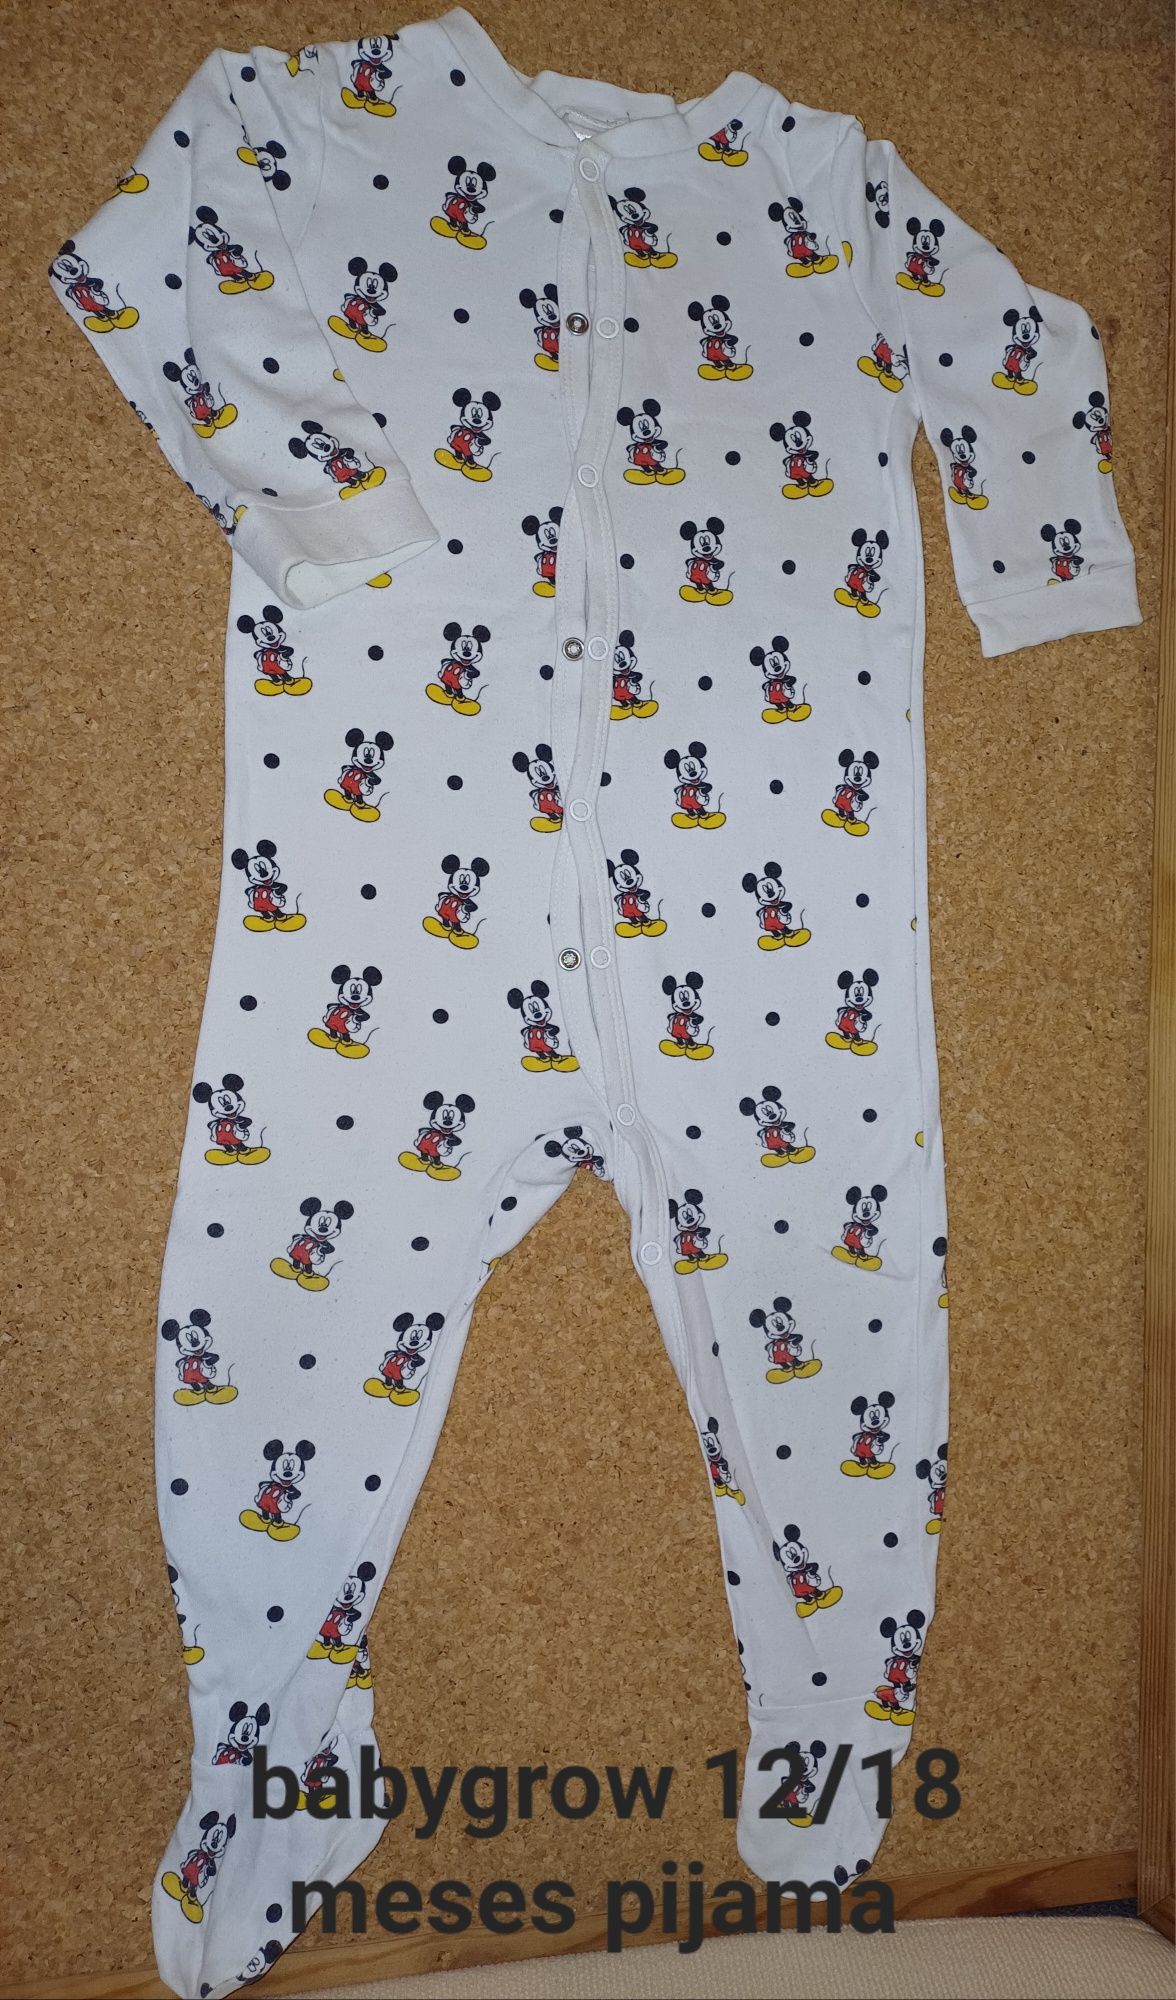 Babygrow Mickey 12/18 meses, bebé, bom estado, pijamas.